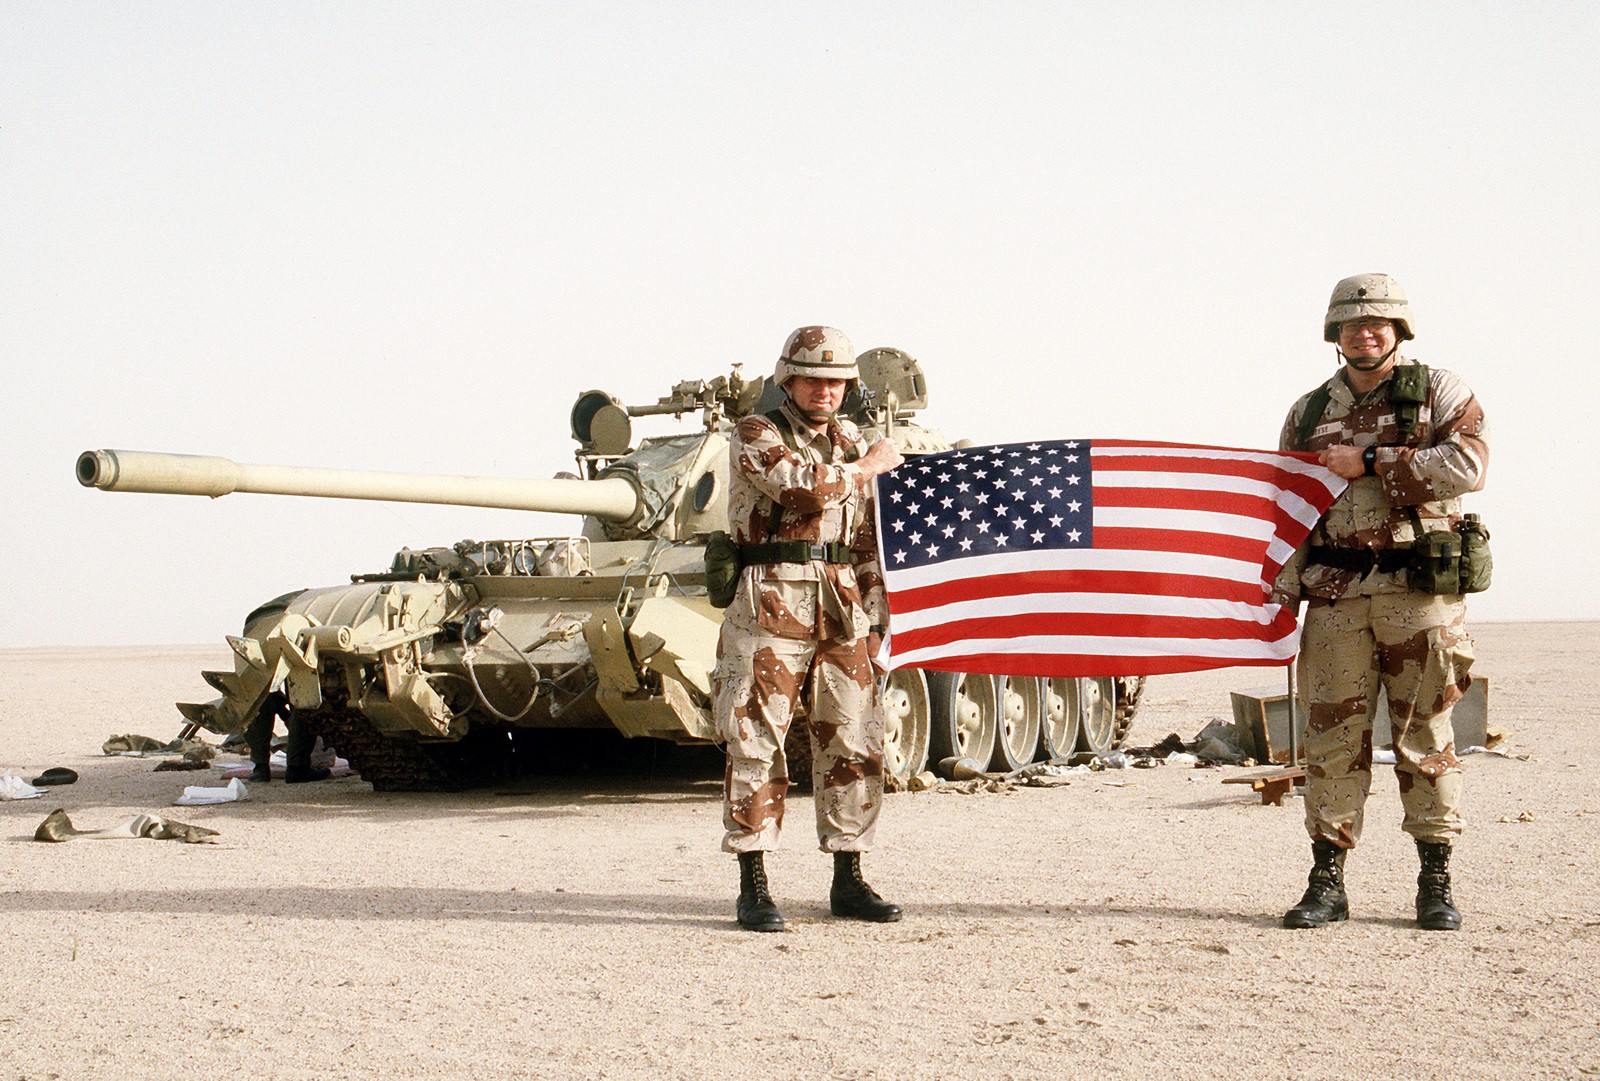 Política dos EUA de Guerra ao Terror resultou em 900 mil mortes, estima estudo (Foto: TECH. SGT. Donald S. Mcmichael/Creative Commons)